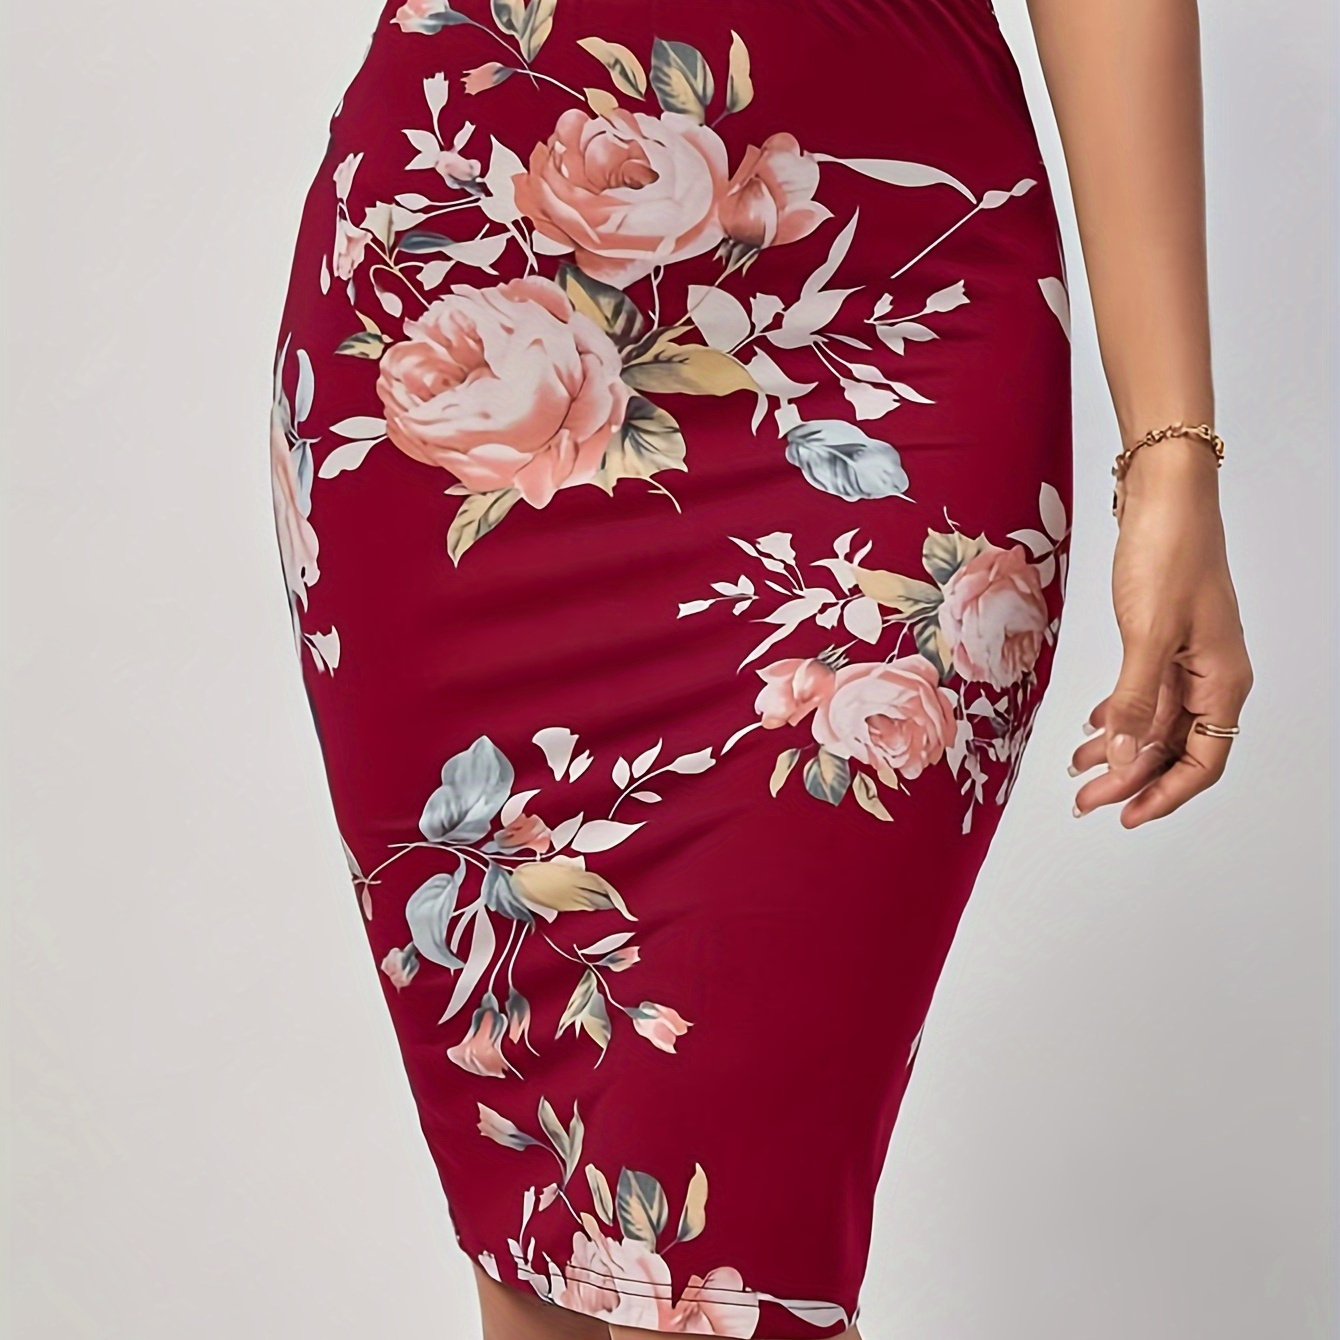 

Floral Print Pencil Skirt, Elegant High Waist Midi Skirt For Spring & Summer, Women's Clothing